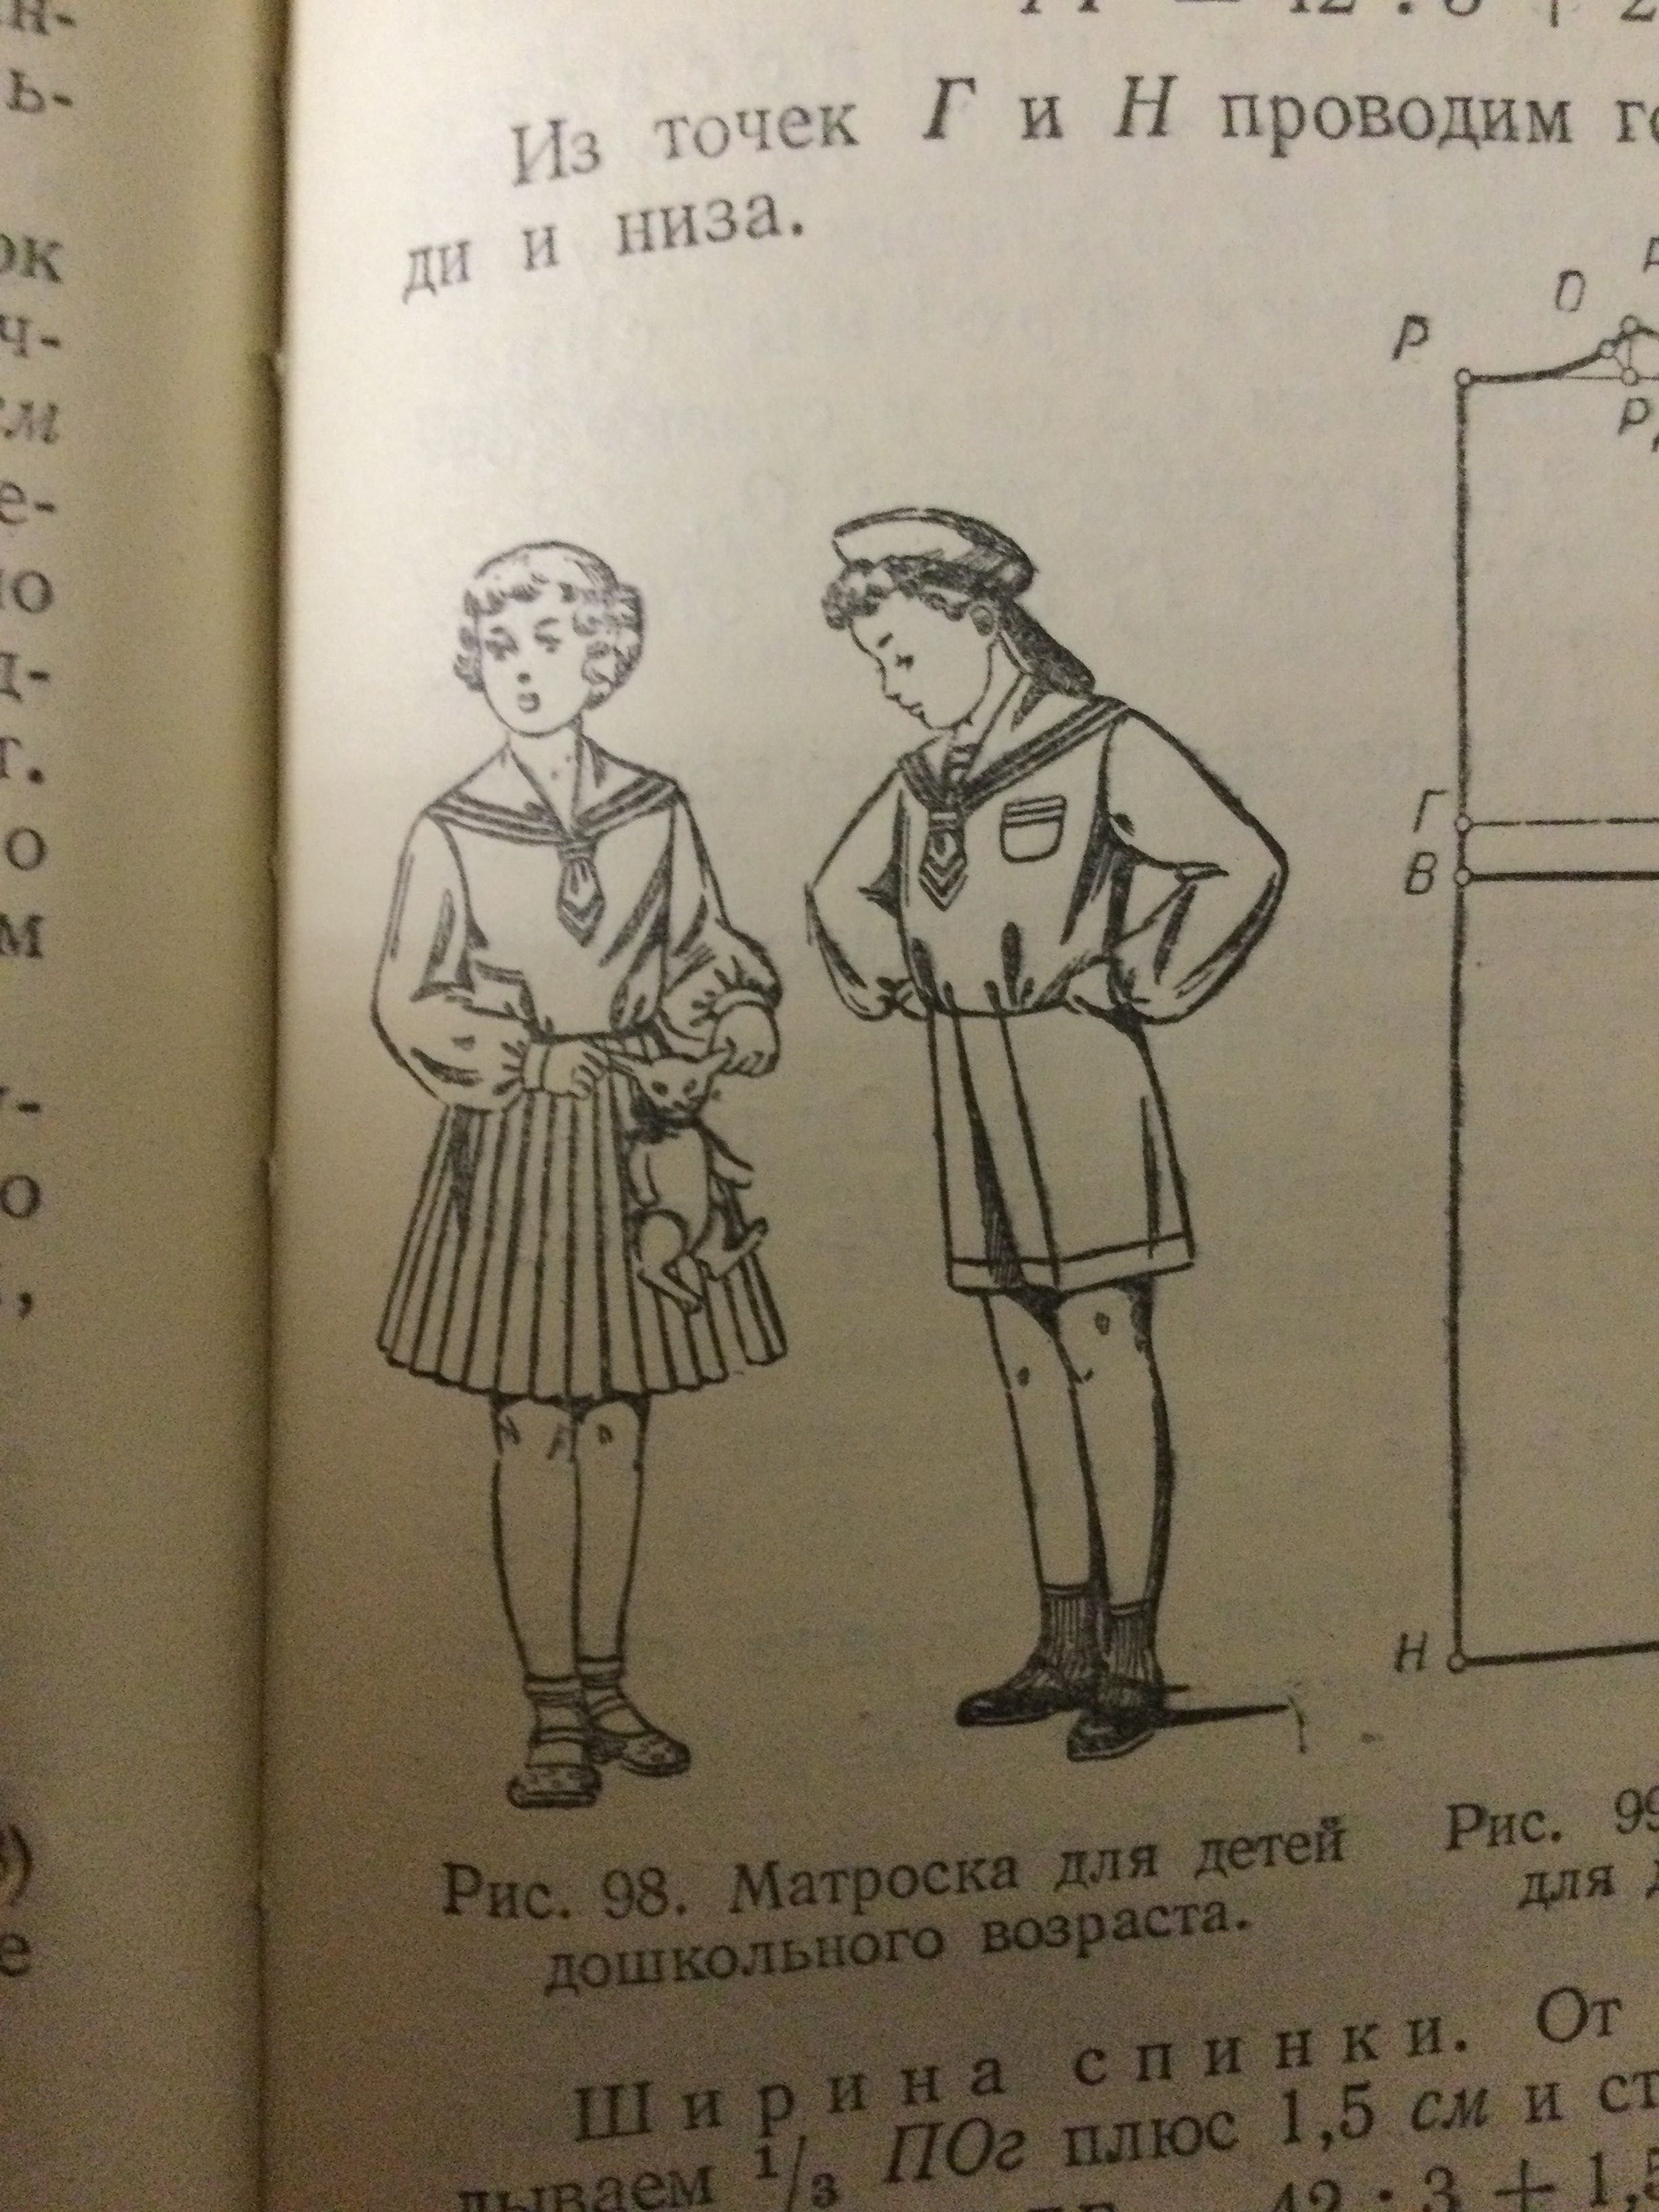 Книга « Кройка и шитьё» с прелестными картинками 1954 г. И другие.